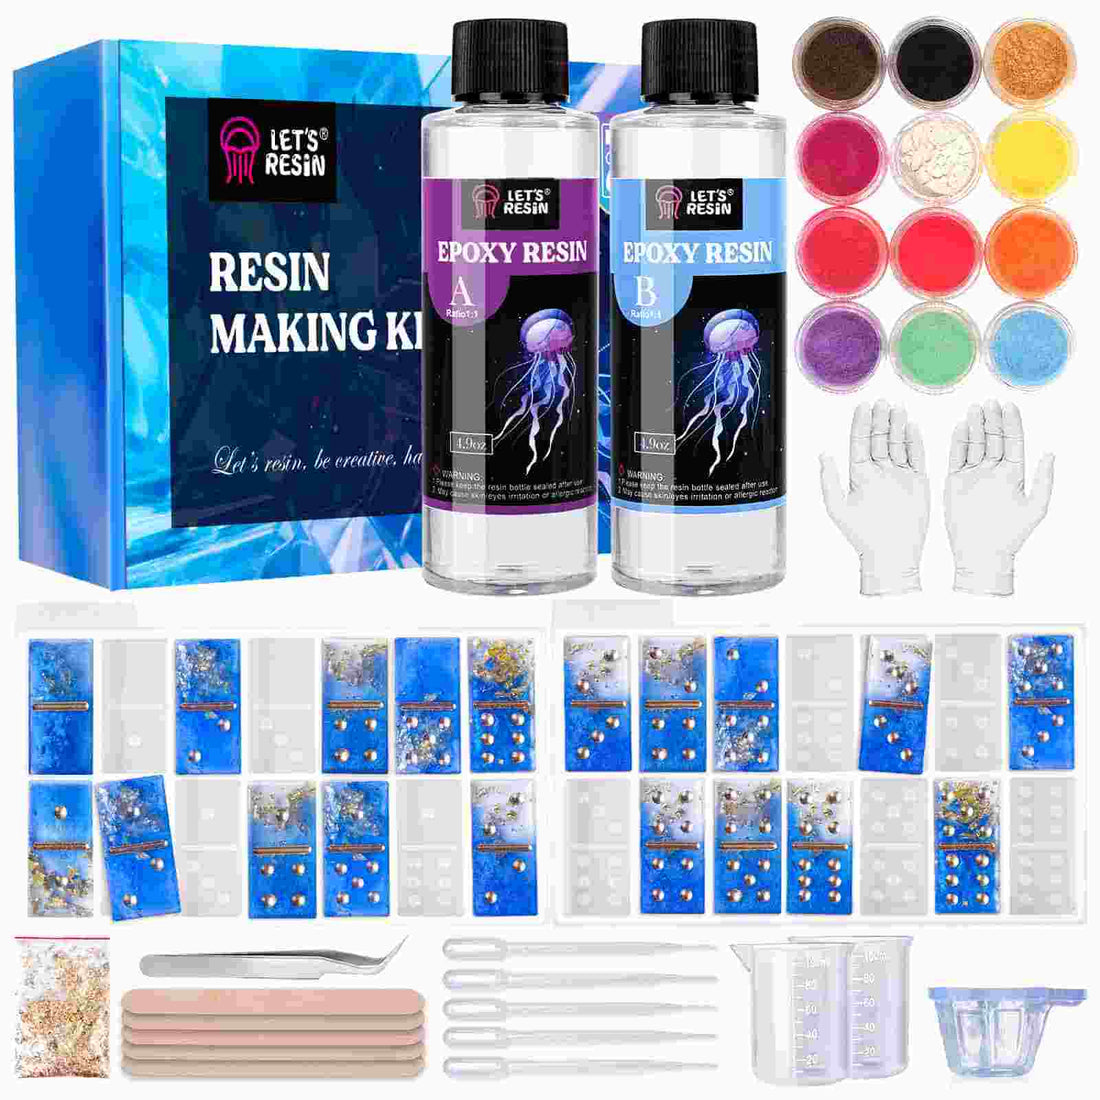  LET'S RESIN Kit de resina epoxi para principiantes